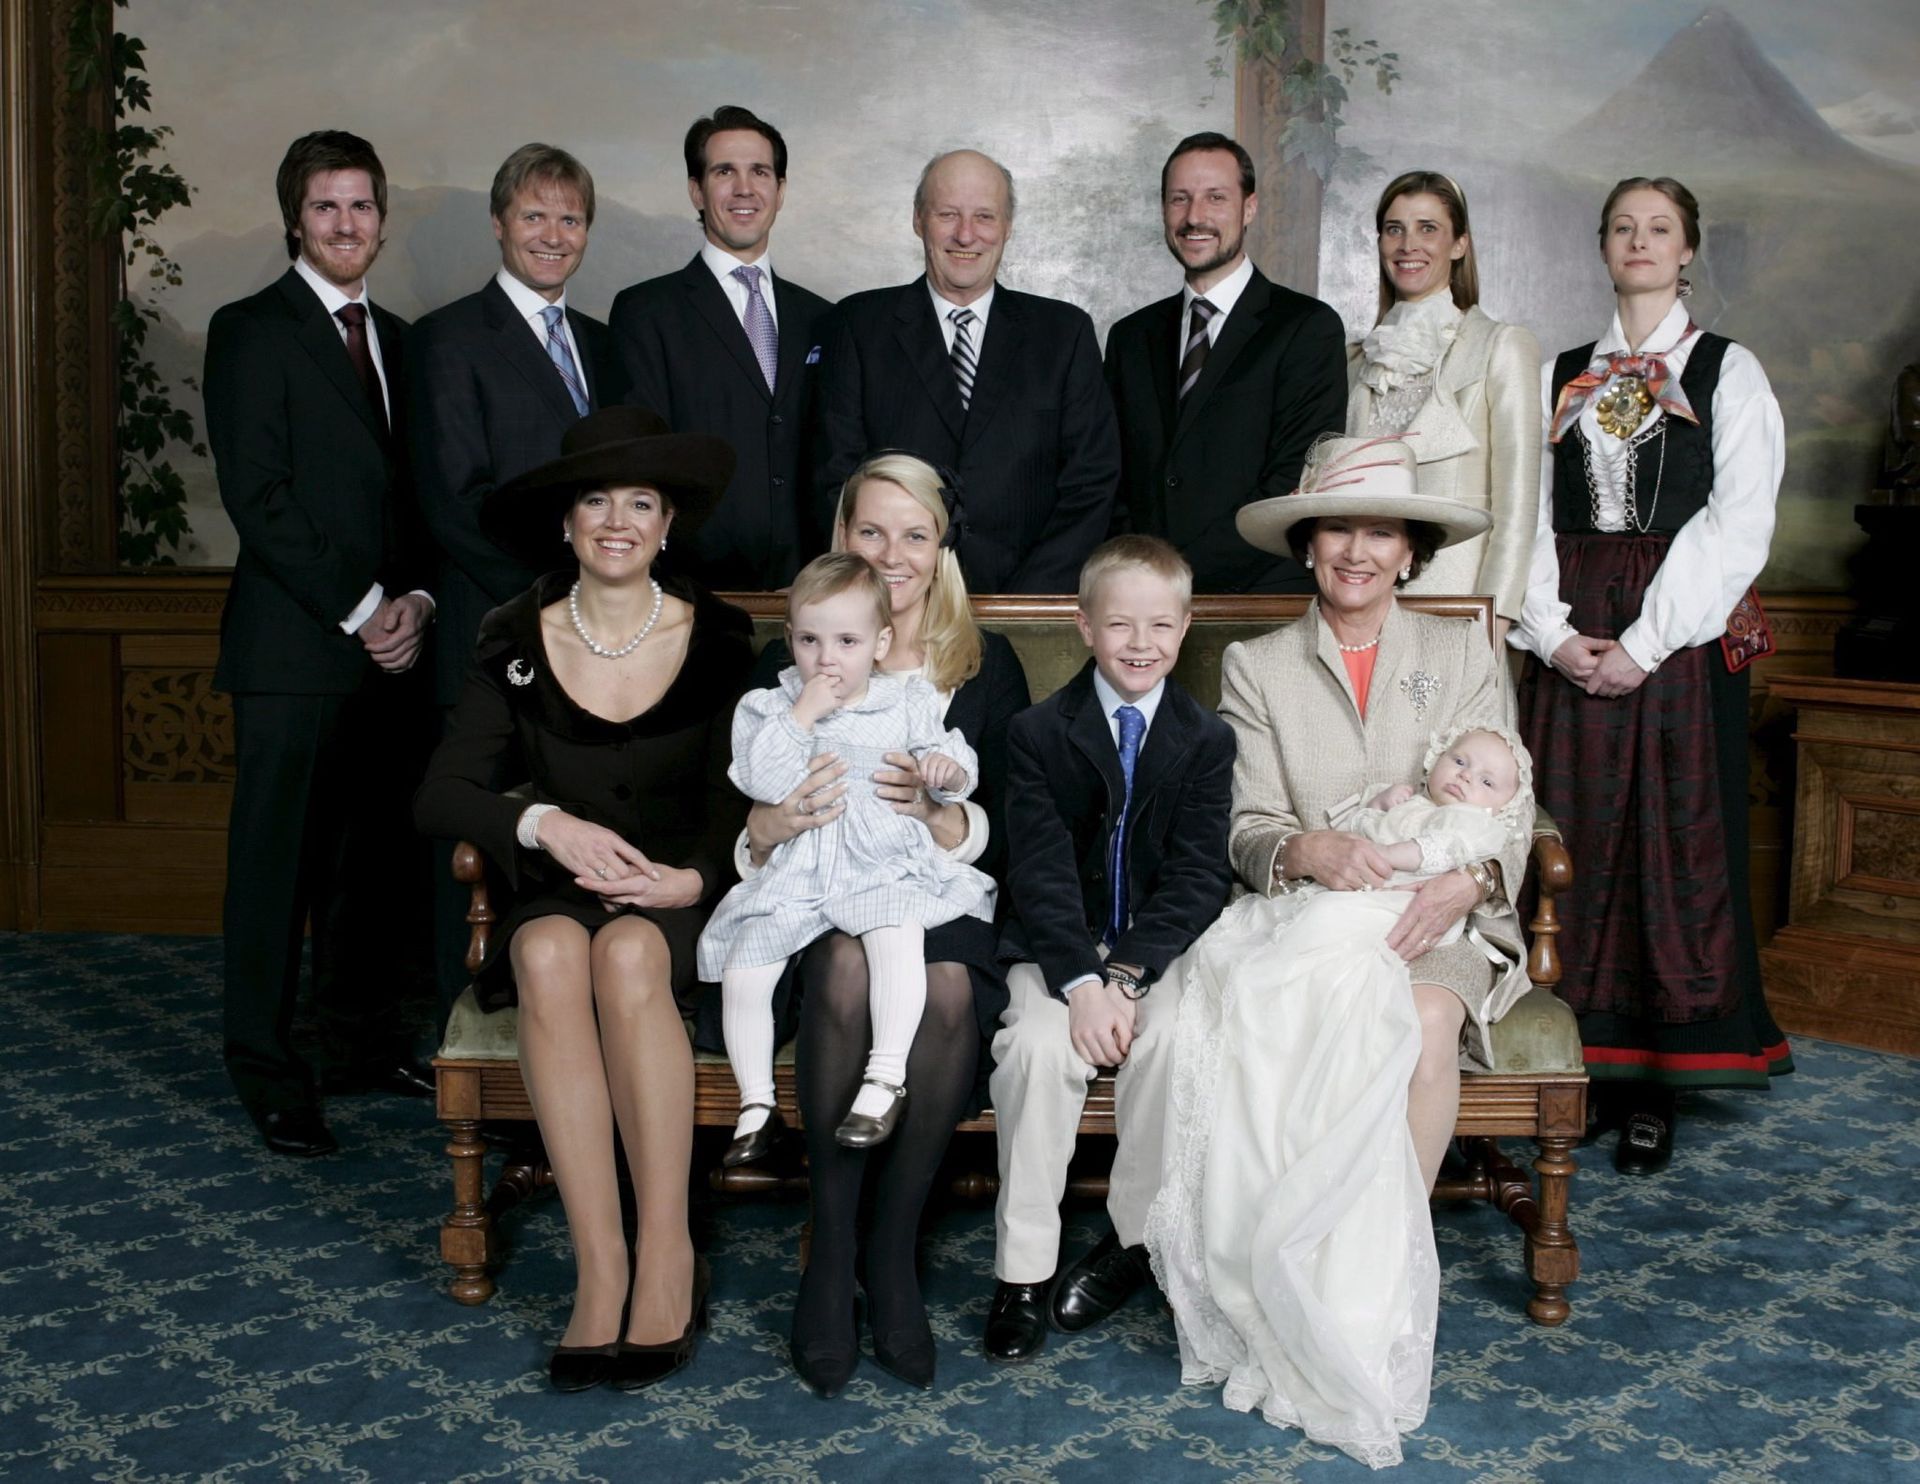 Koningin Máxima is peetmoeder van prins Sverre Magnus, de nu bijna 16-jarige zoon van kroonprins